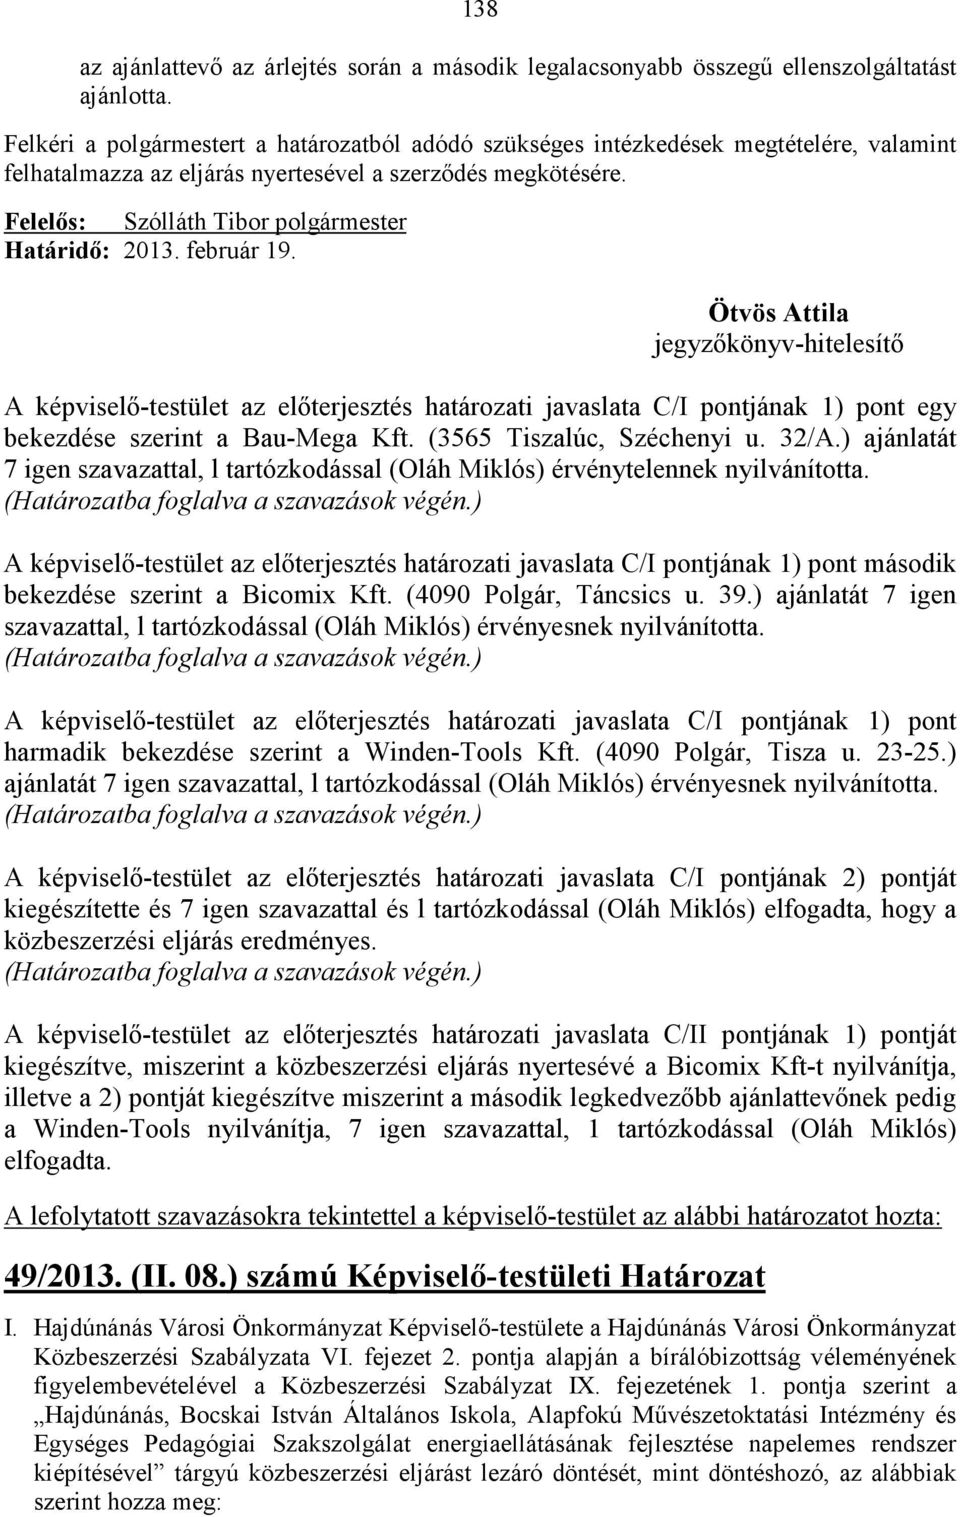 A képviselı-testület az elıterjesztés határozati javaslata C/I pontjának 1) pont egy bekezdése szerint a Bau-Mega Kft. (3565 Tiszalúc, Széchenyi u. 32/A.